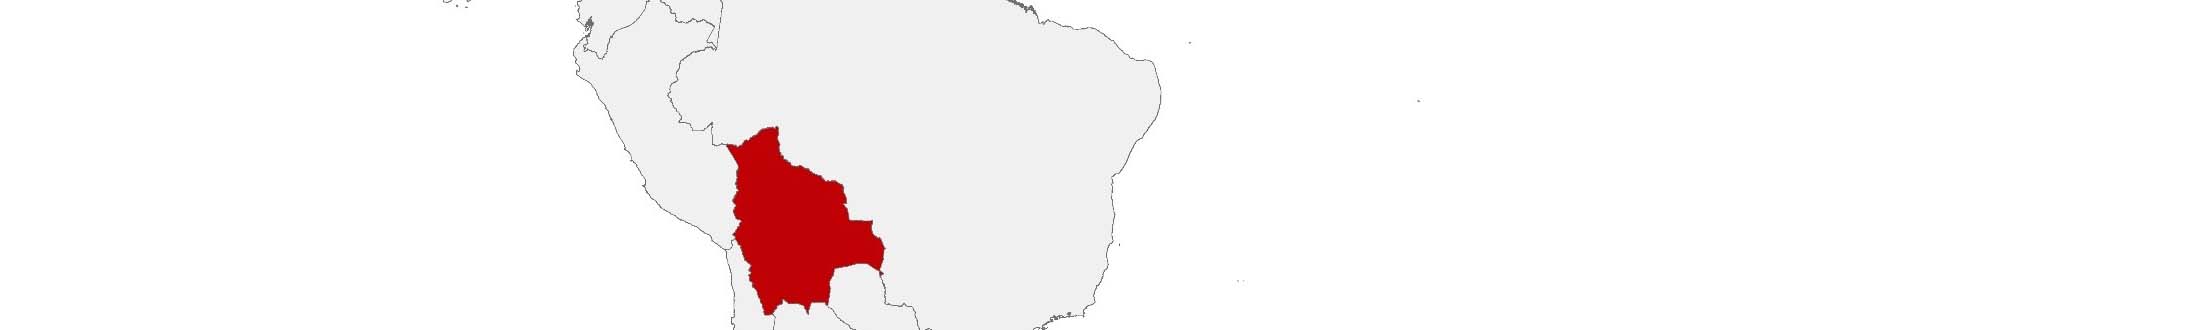 Kaufkraftdaten und soziodemographische Daten können auf einer Karte von Bolivien mithilfe der Gebietsgrenzen Departamentos und Municipios dargestellt werden.